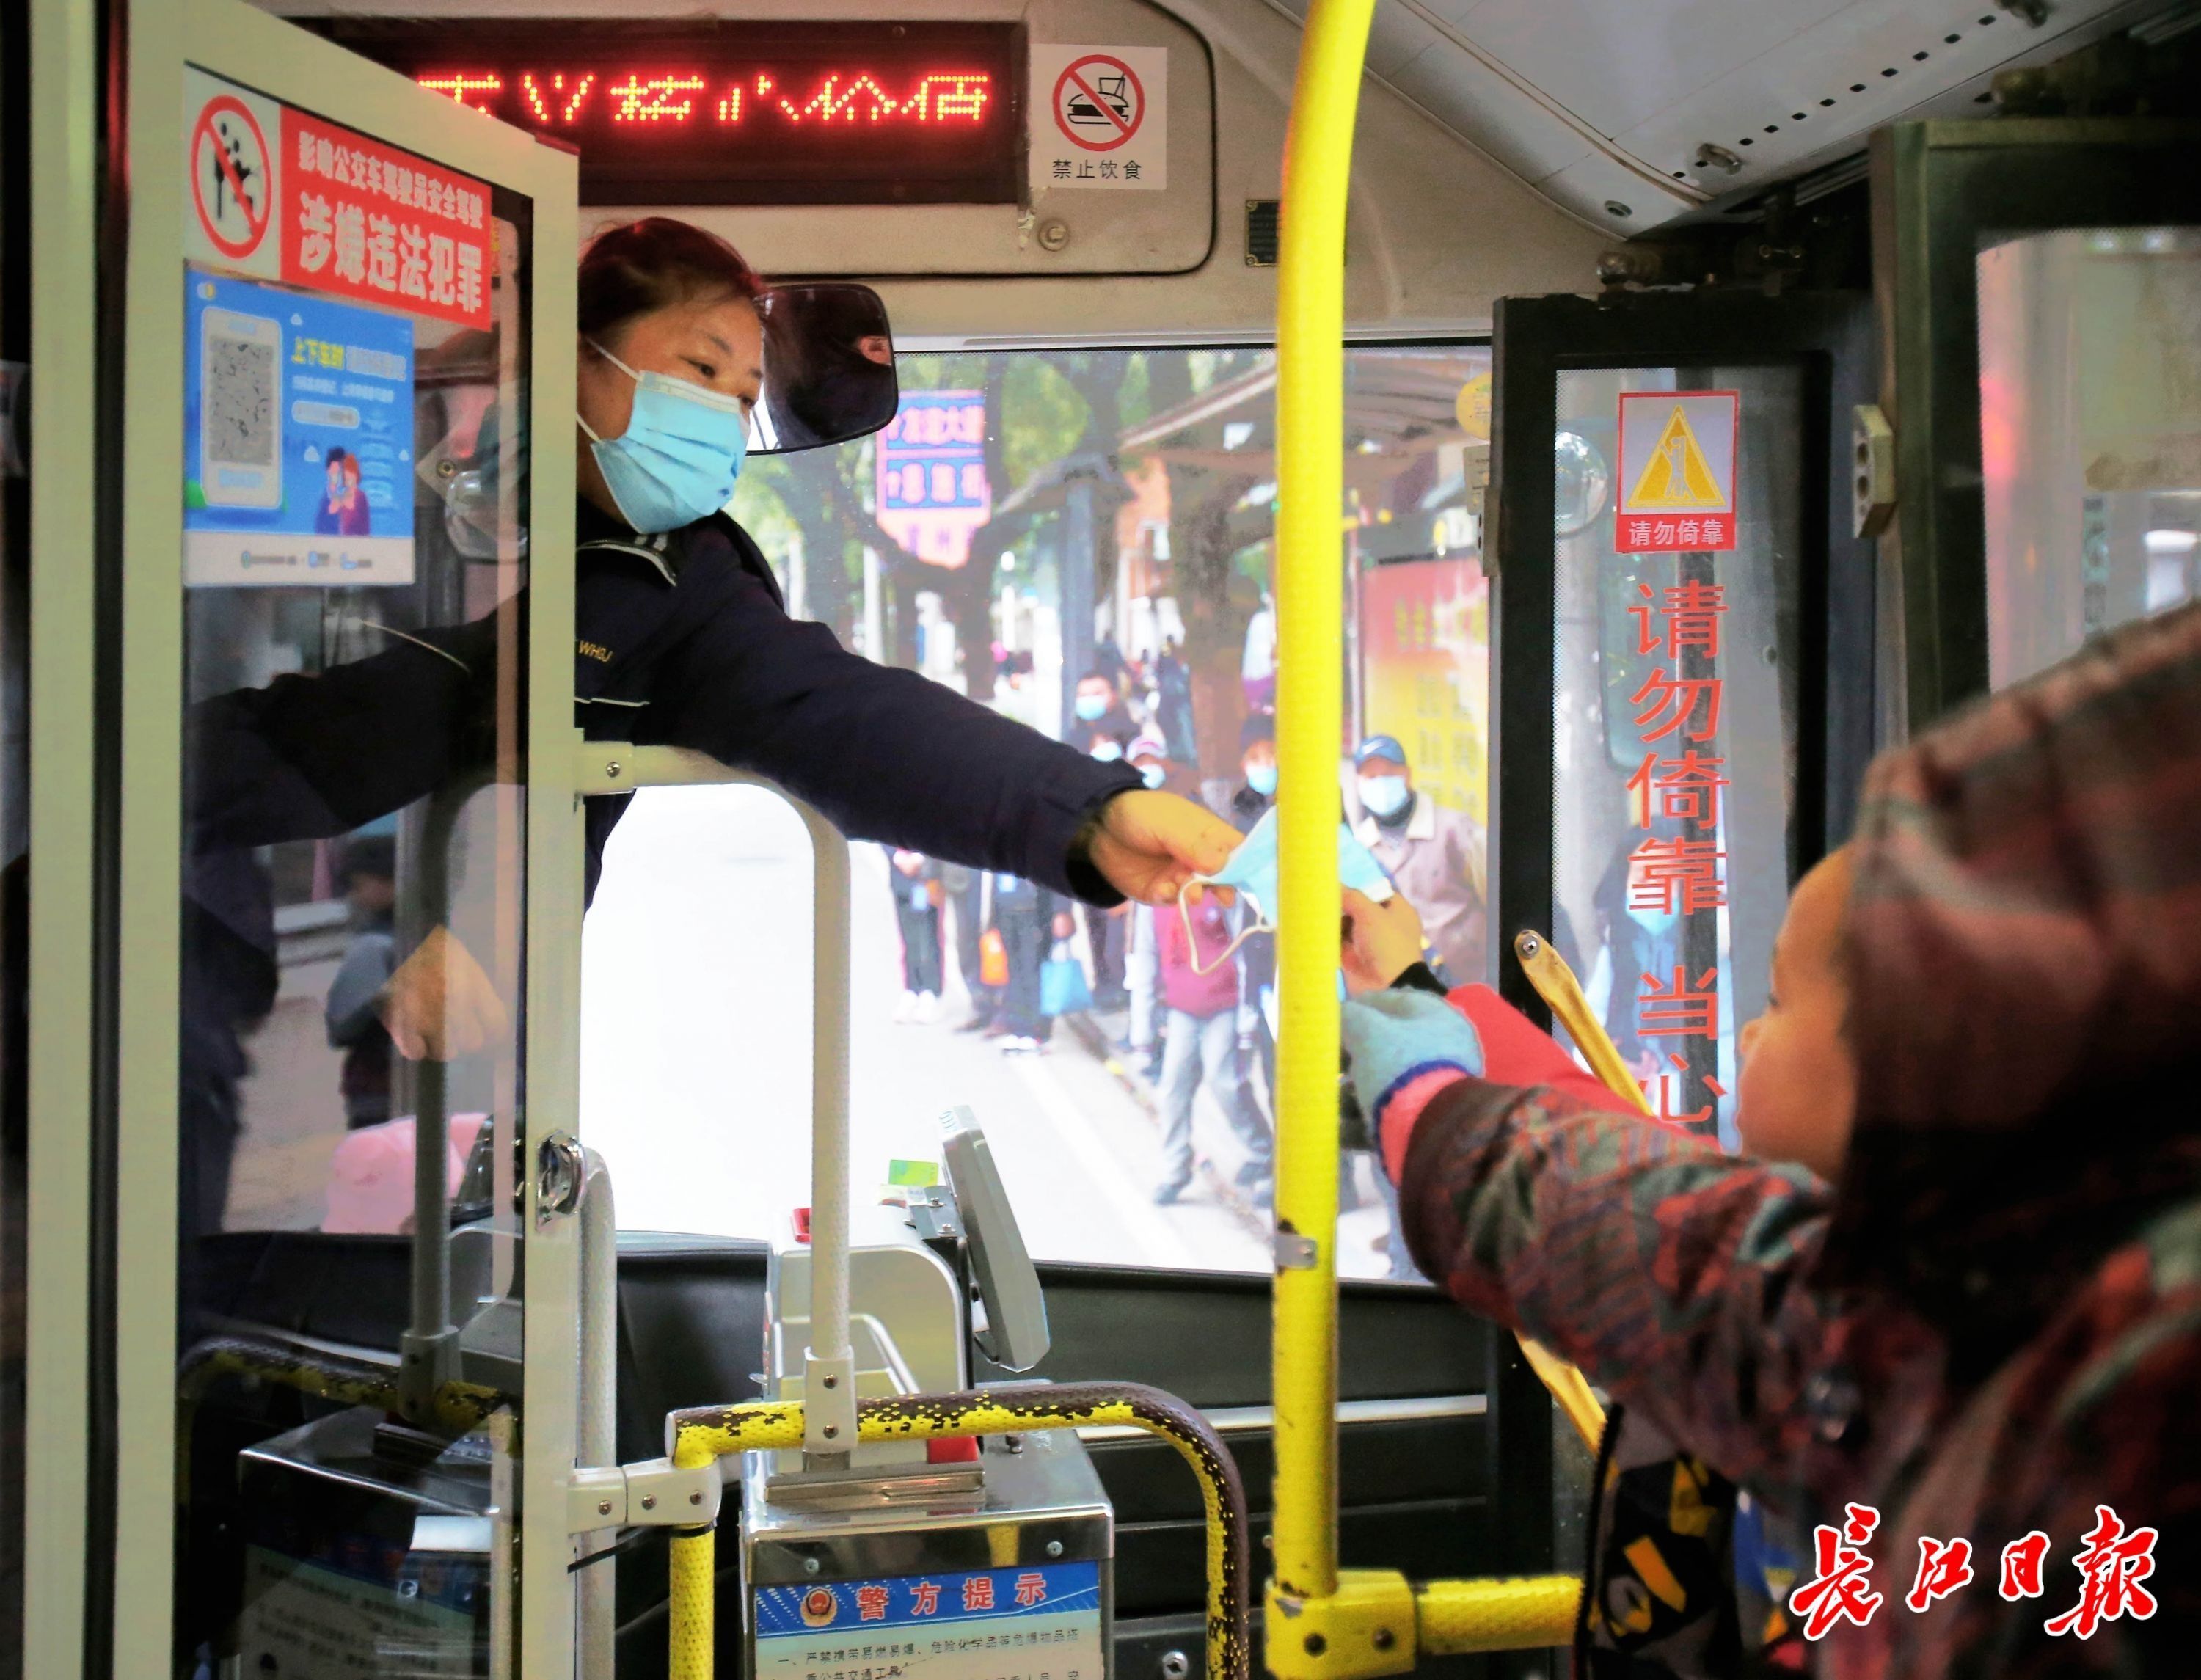 公交车上的淡蓝色毛衣美女_中国街拍-真实街拍第一站